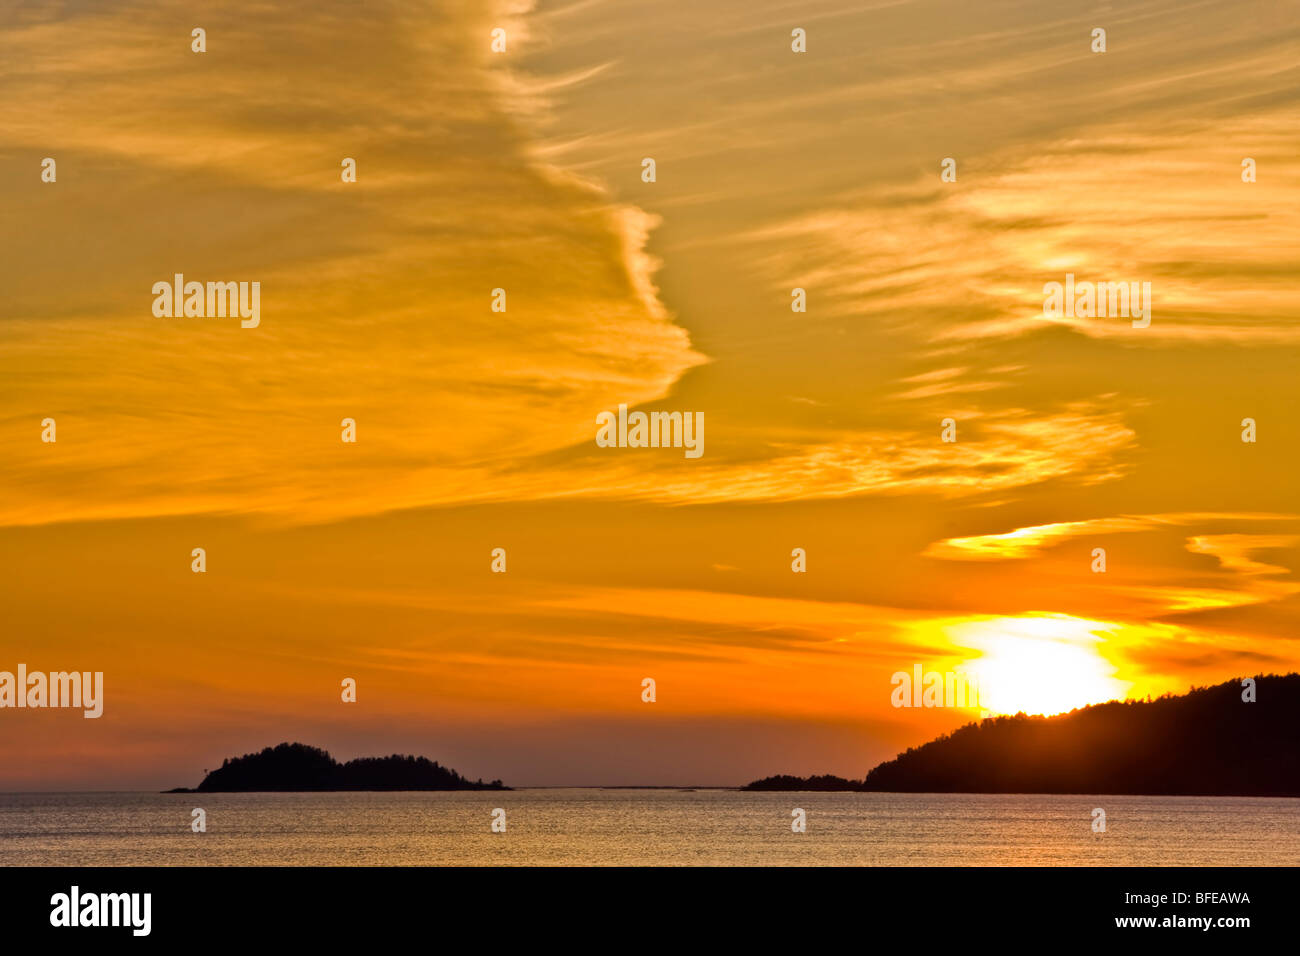 Agawa Bay at sunset, Lake Superior, Lake Superior Provincial Park, Ontario, Canada Stock Photo